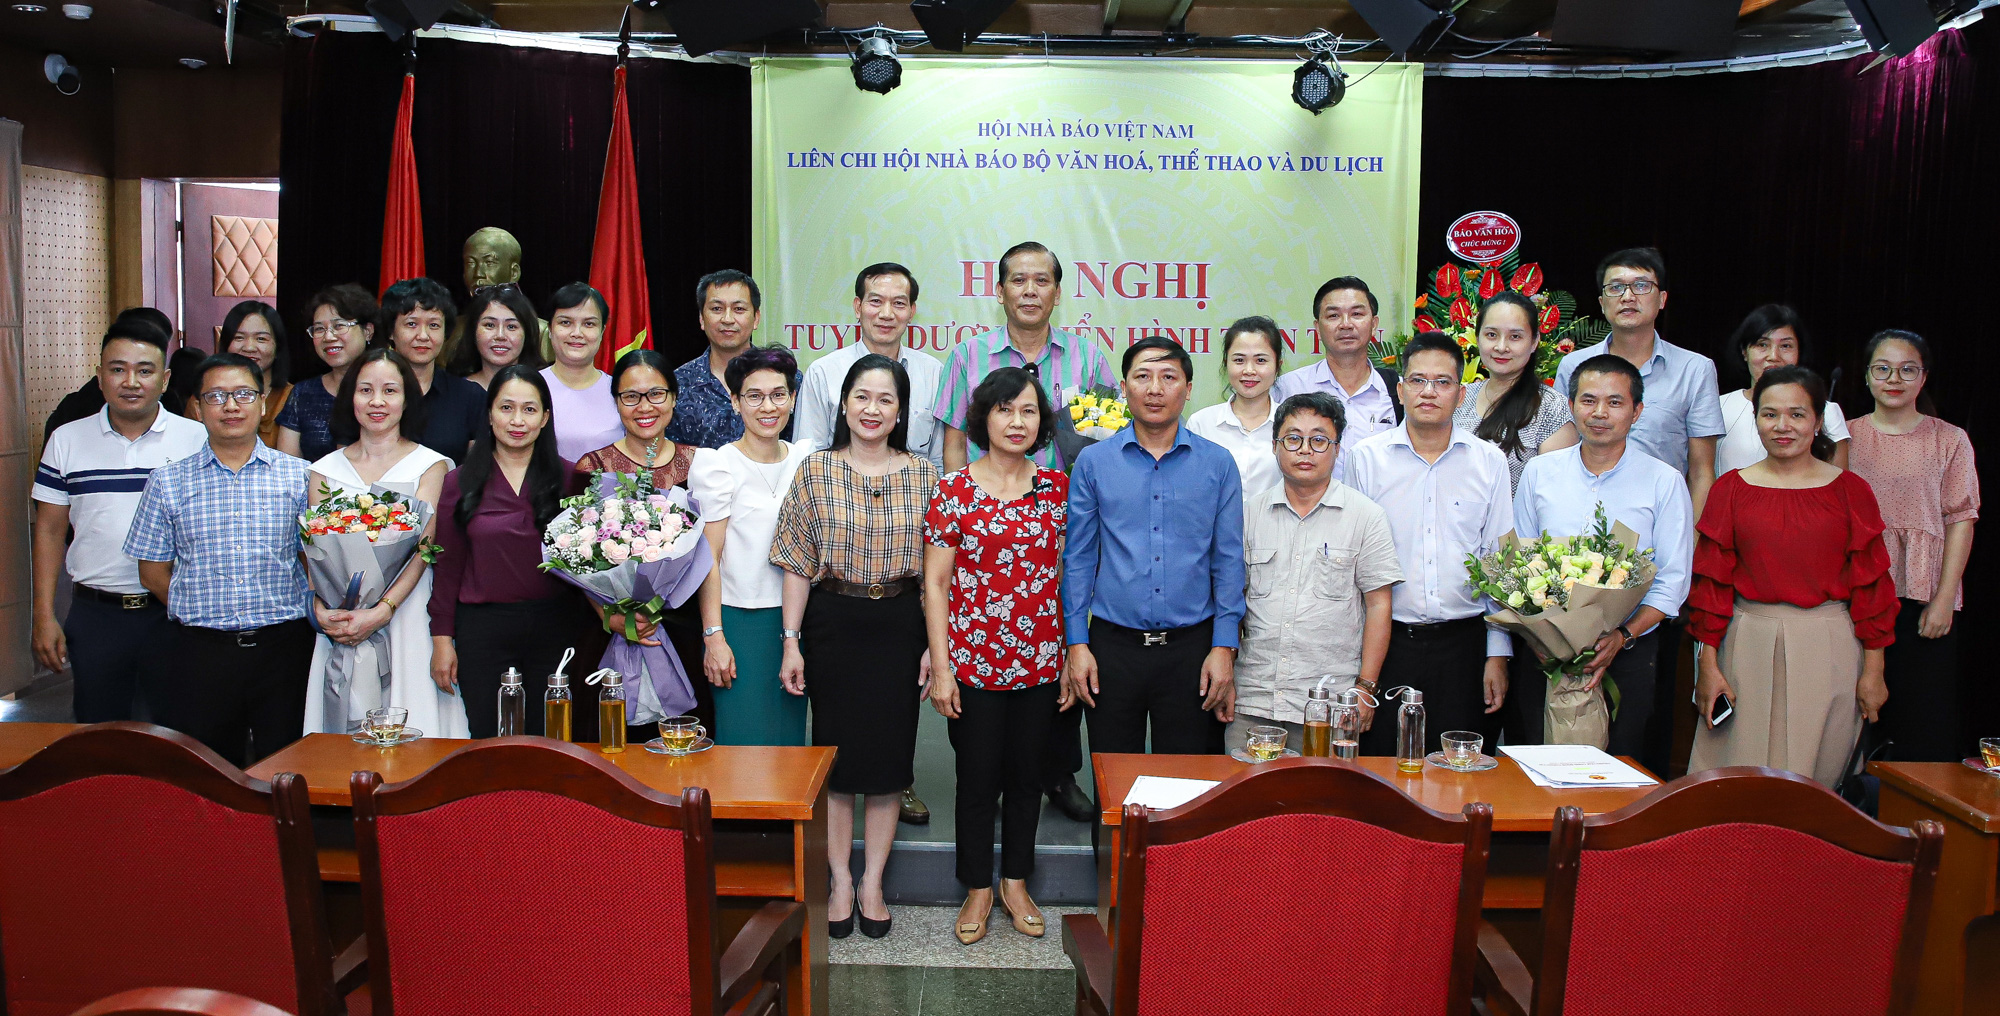  Liên Chi hội Nhà báo Bộ VHTTDL tổ chức Hội nghị tuyên dương điển hình tiên tiến - Ảnh 4.